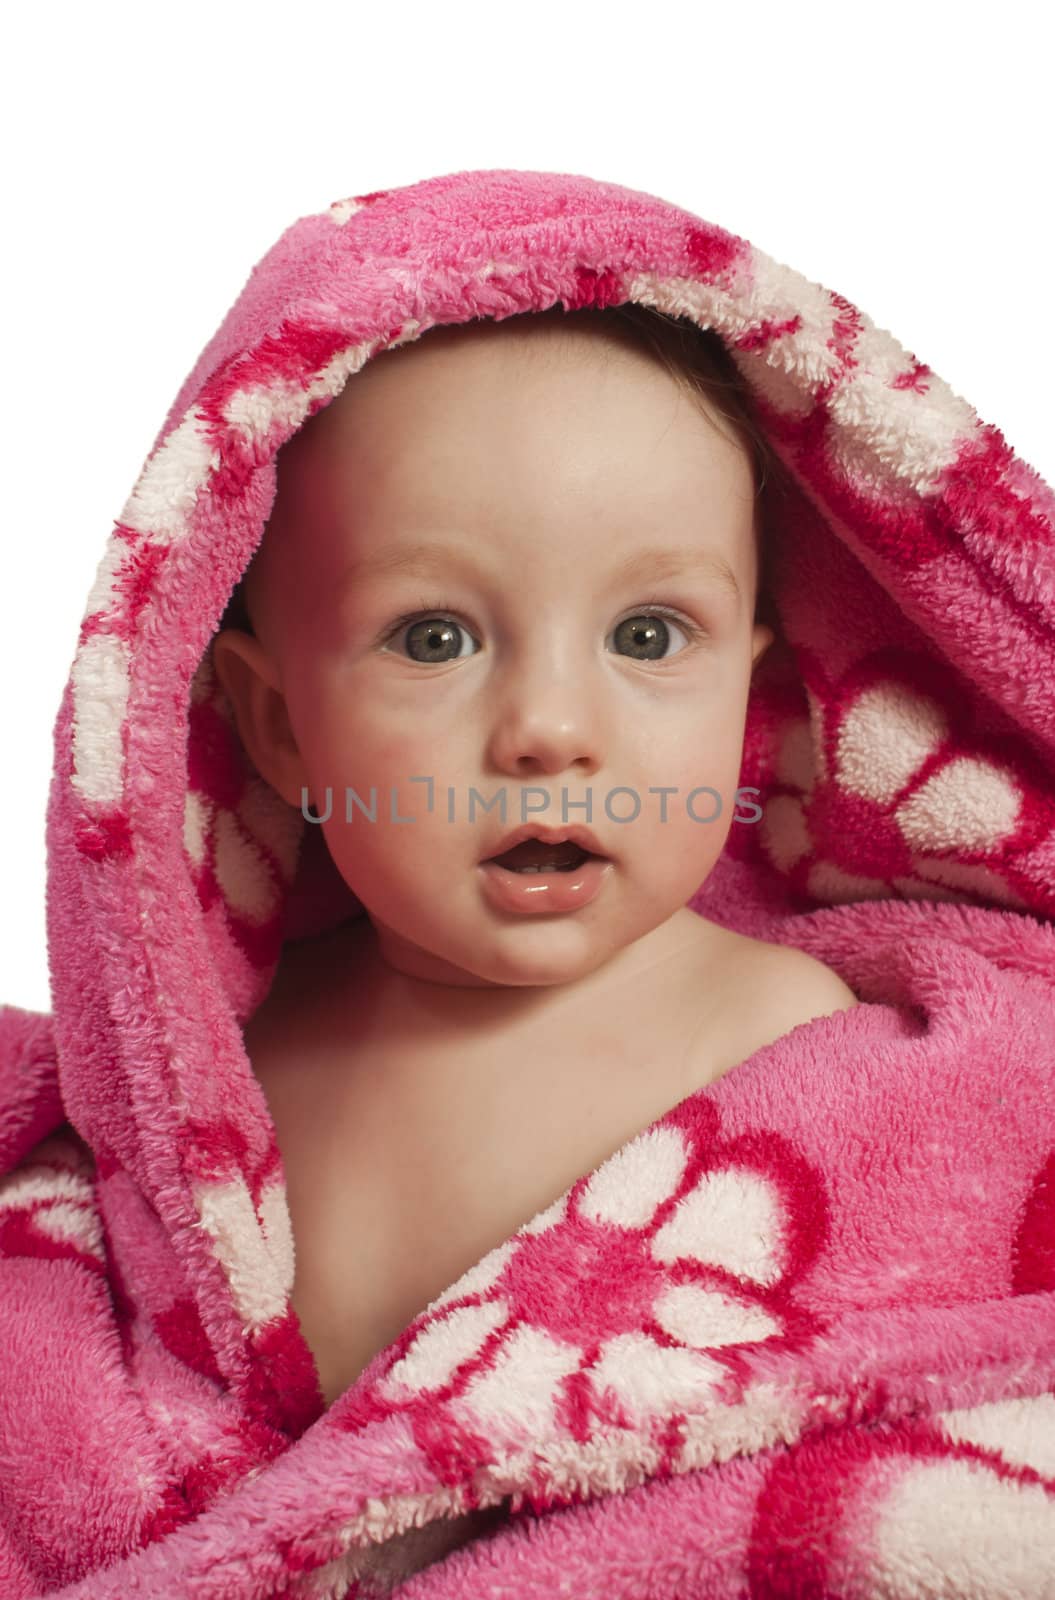 Little baby boy dressed in a rosy bathrobe